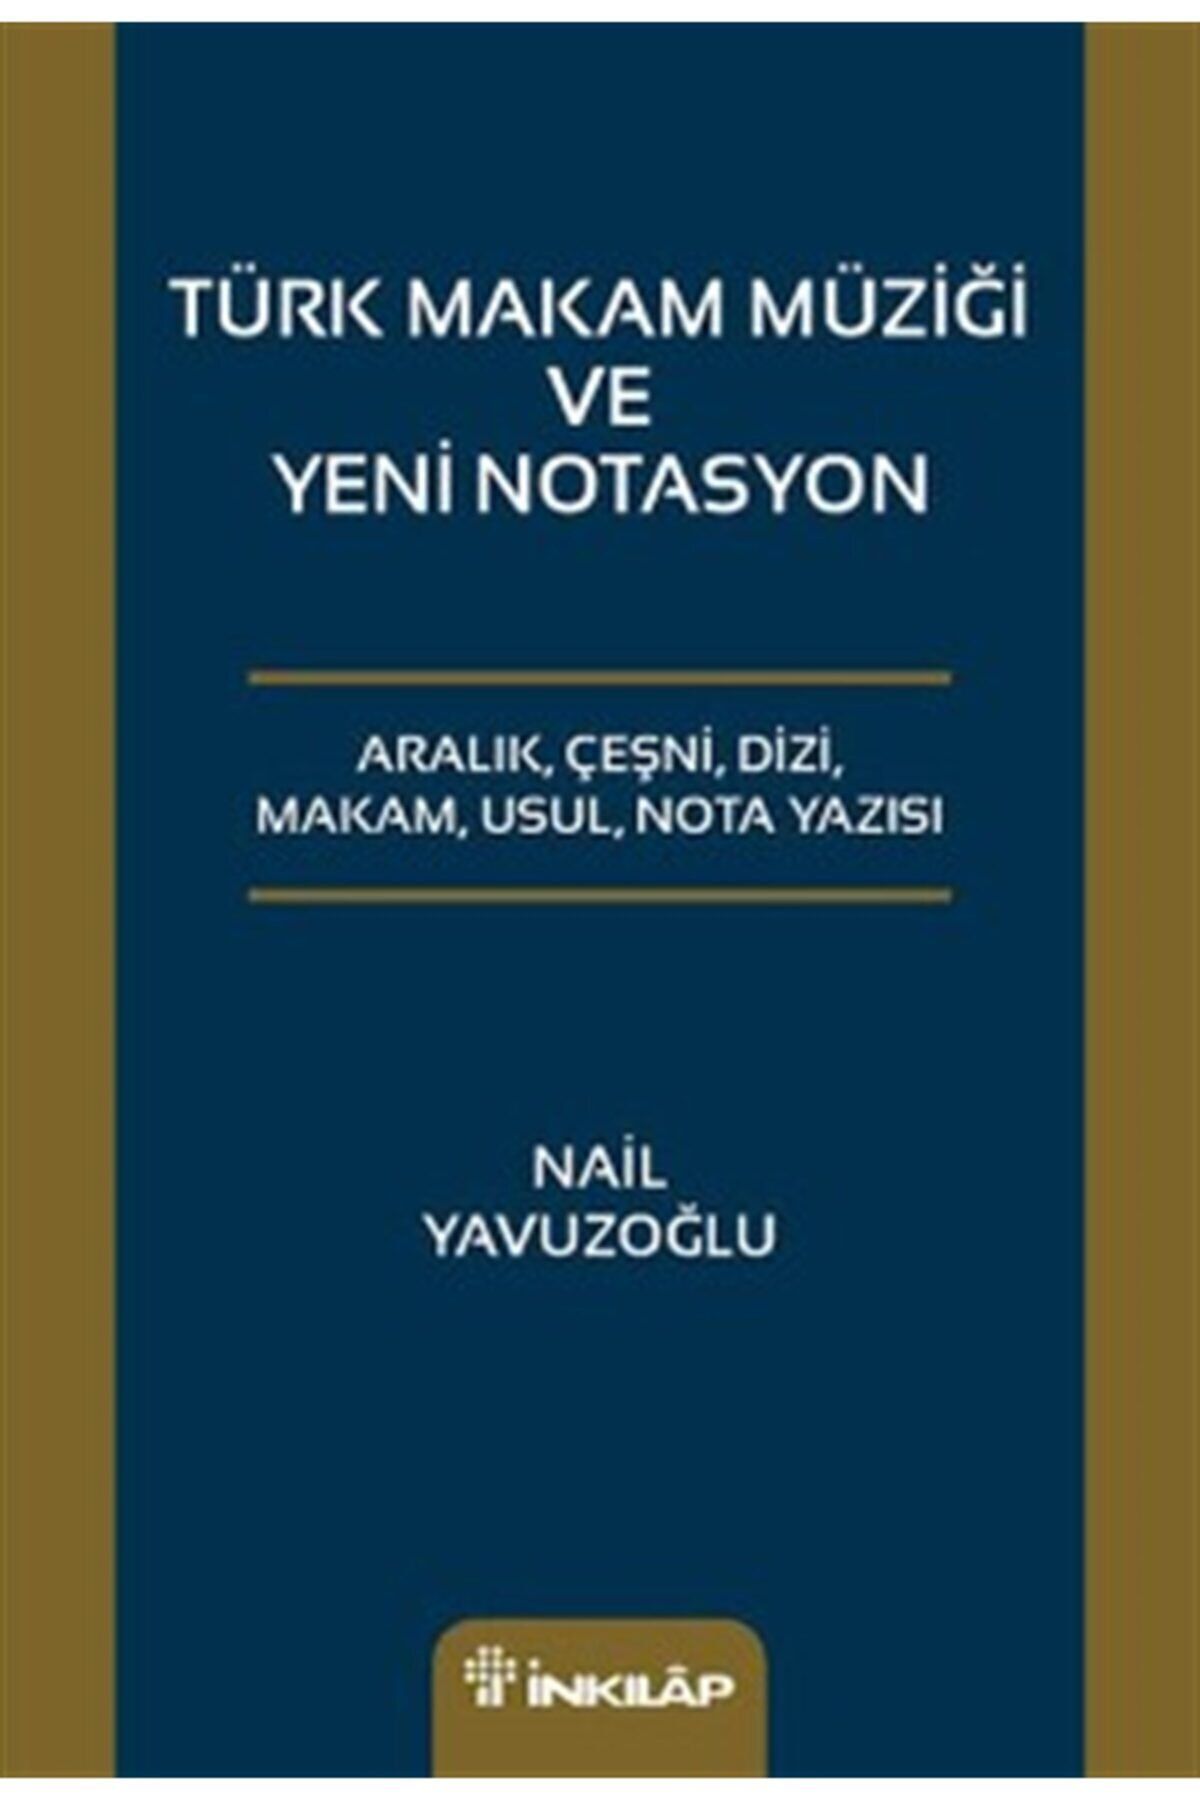 Uğur Türk Makam Müziği Ve Yeni Notasyon